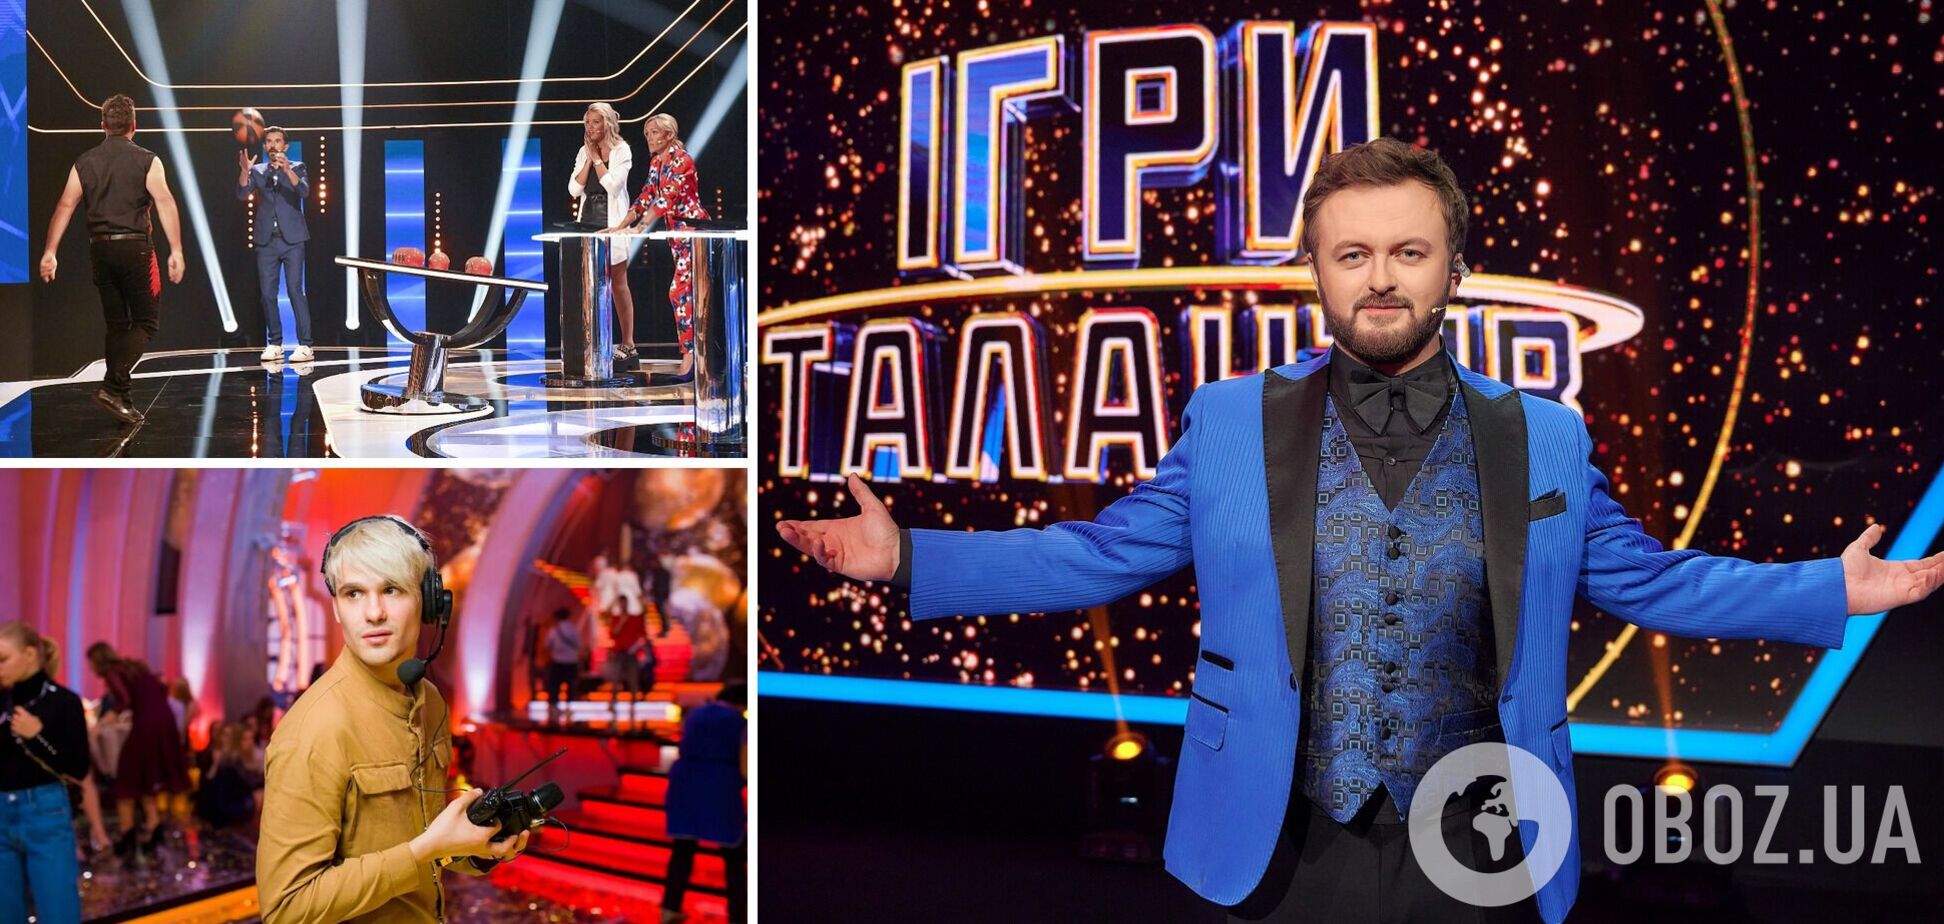 Игры талантов: в Киеве начались съемки нового масштабного шоу